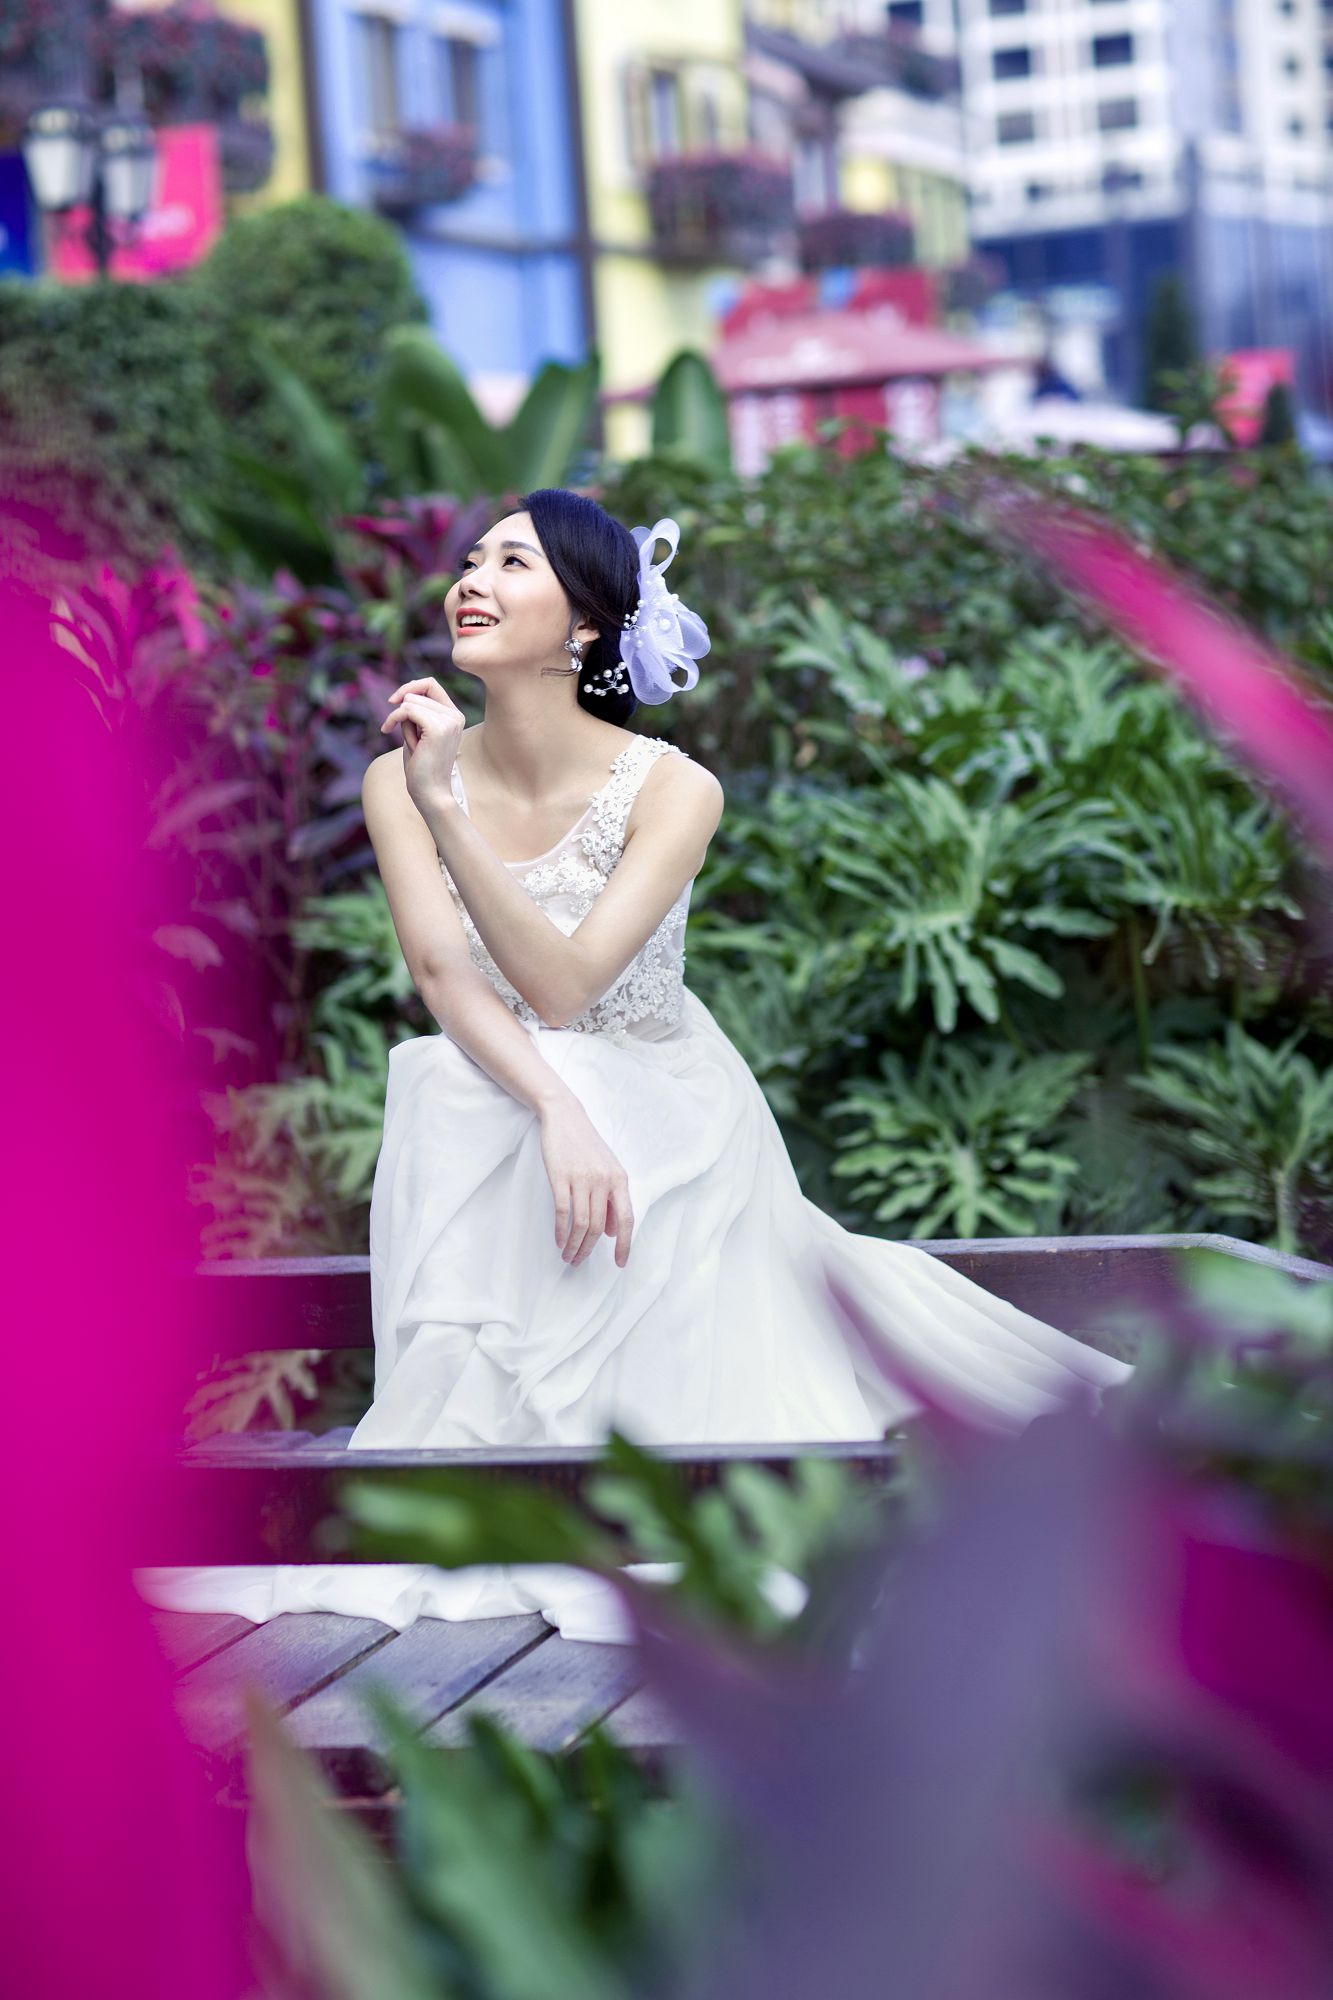 2017年7月广州结婚照,清远婚纱照,婚纱照图片